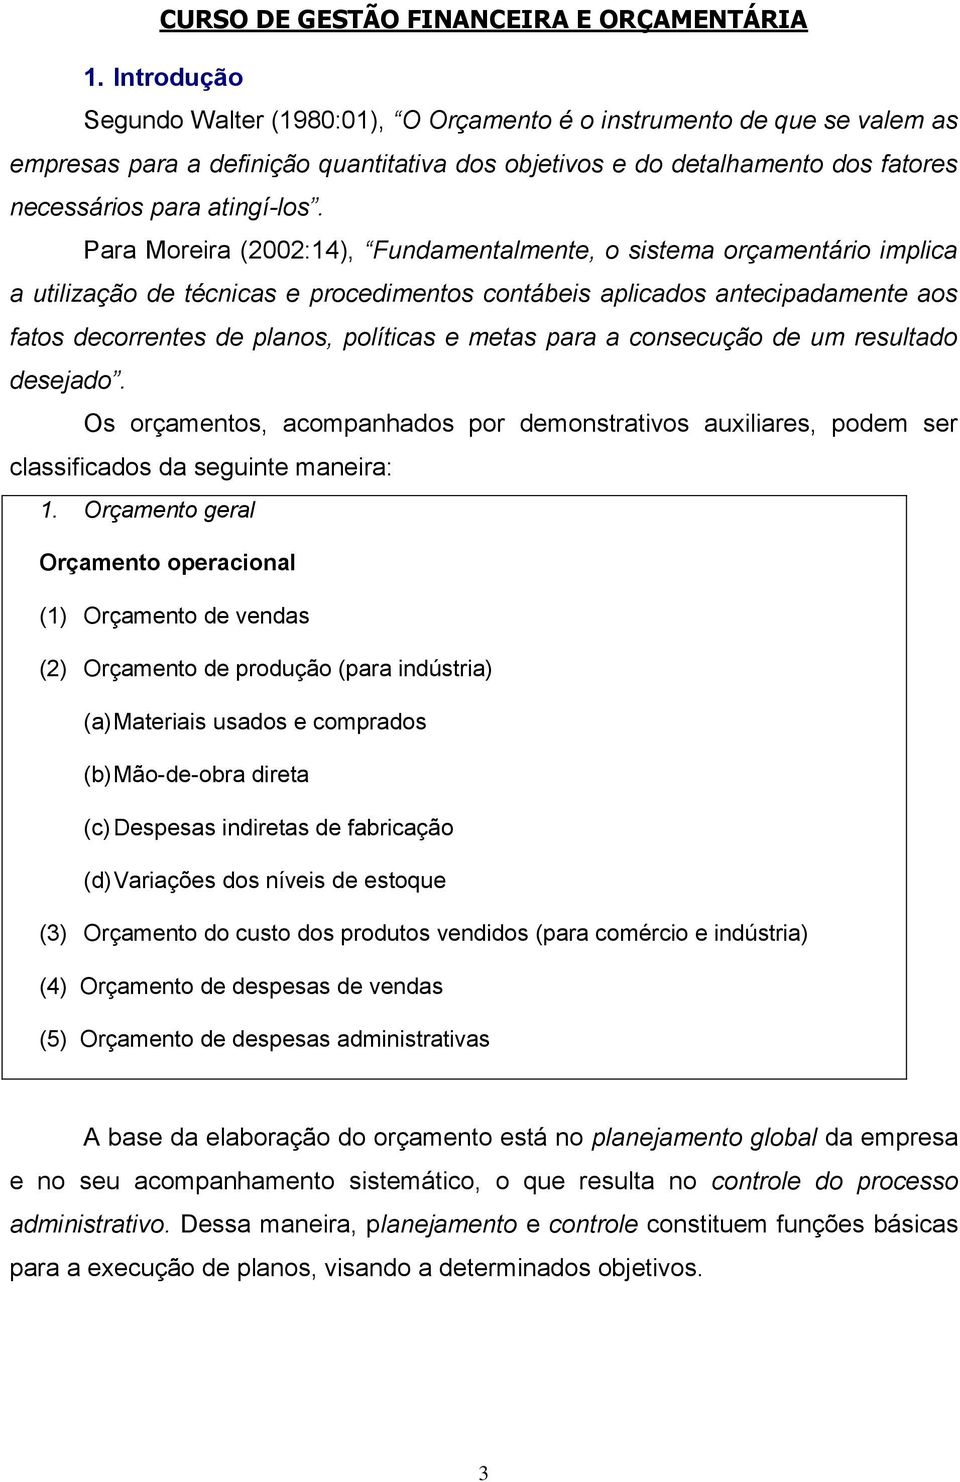 Para Moreira (2002:14), Fundamentalmente, o sistema orçamentário implica a utilização de técnicas e procedimentos contábeis aplicados antecipadamente aos fatos decorrentes de planos, políticas e